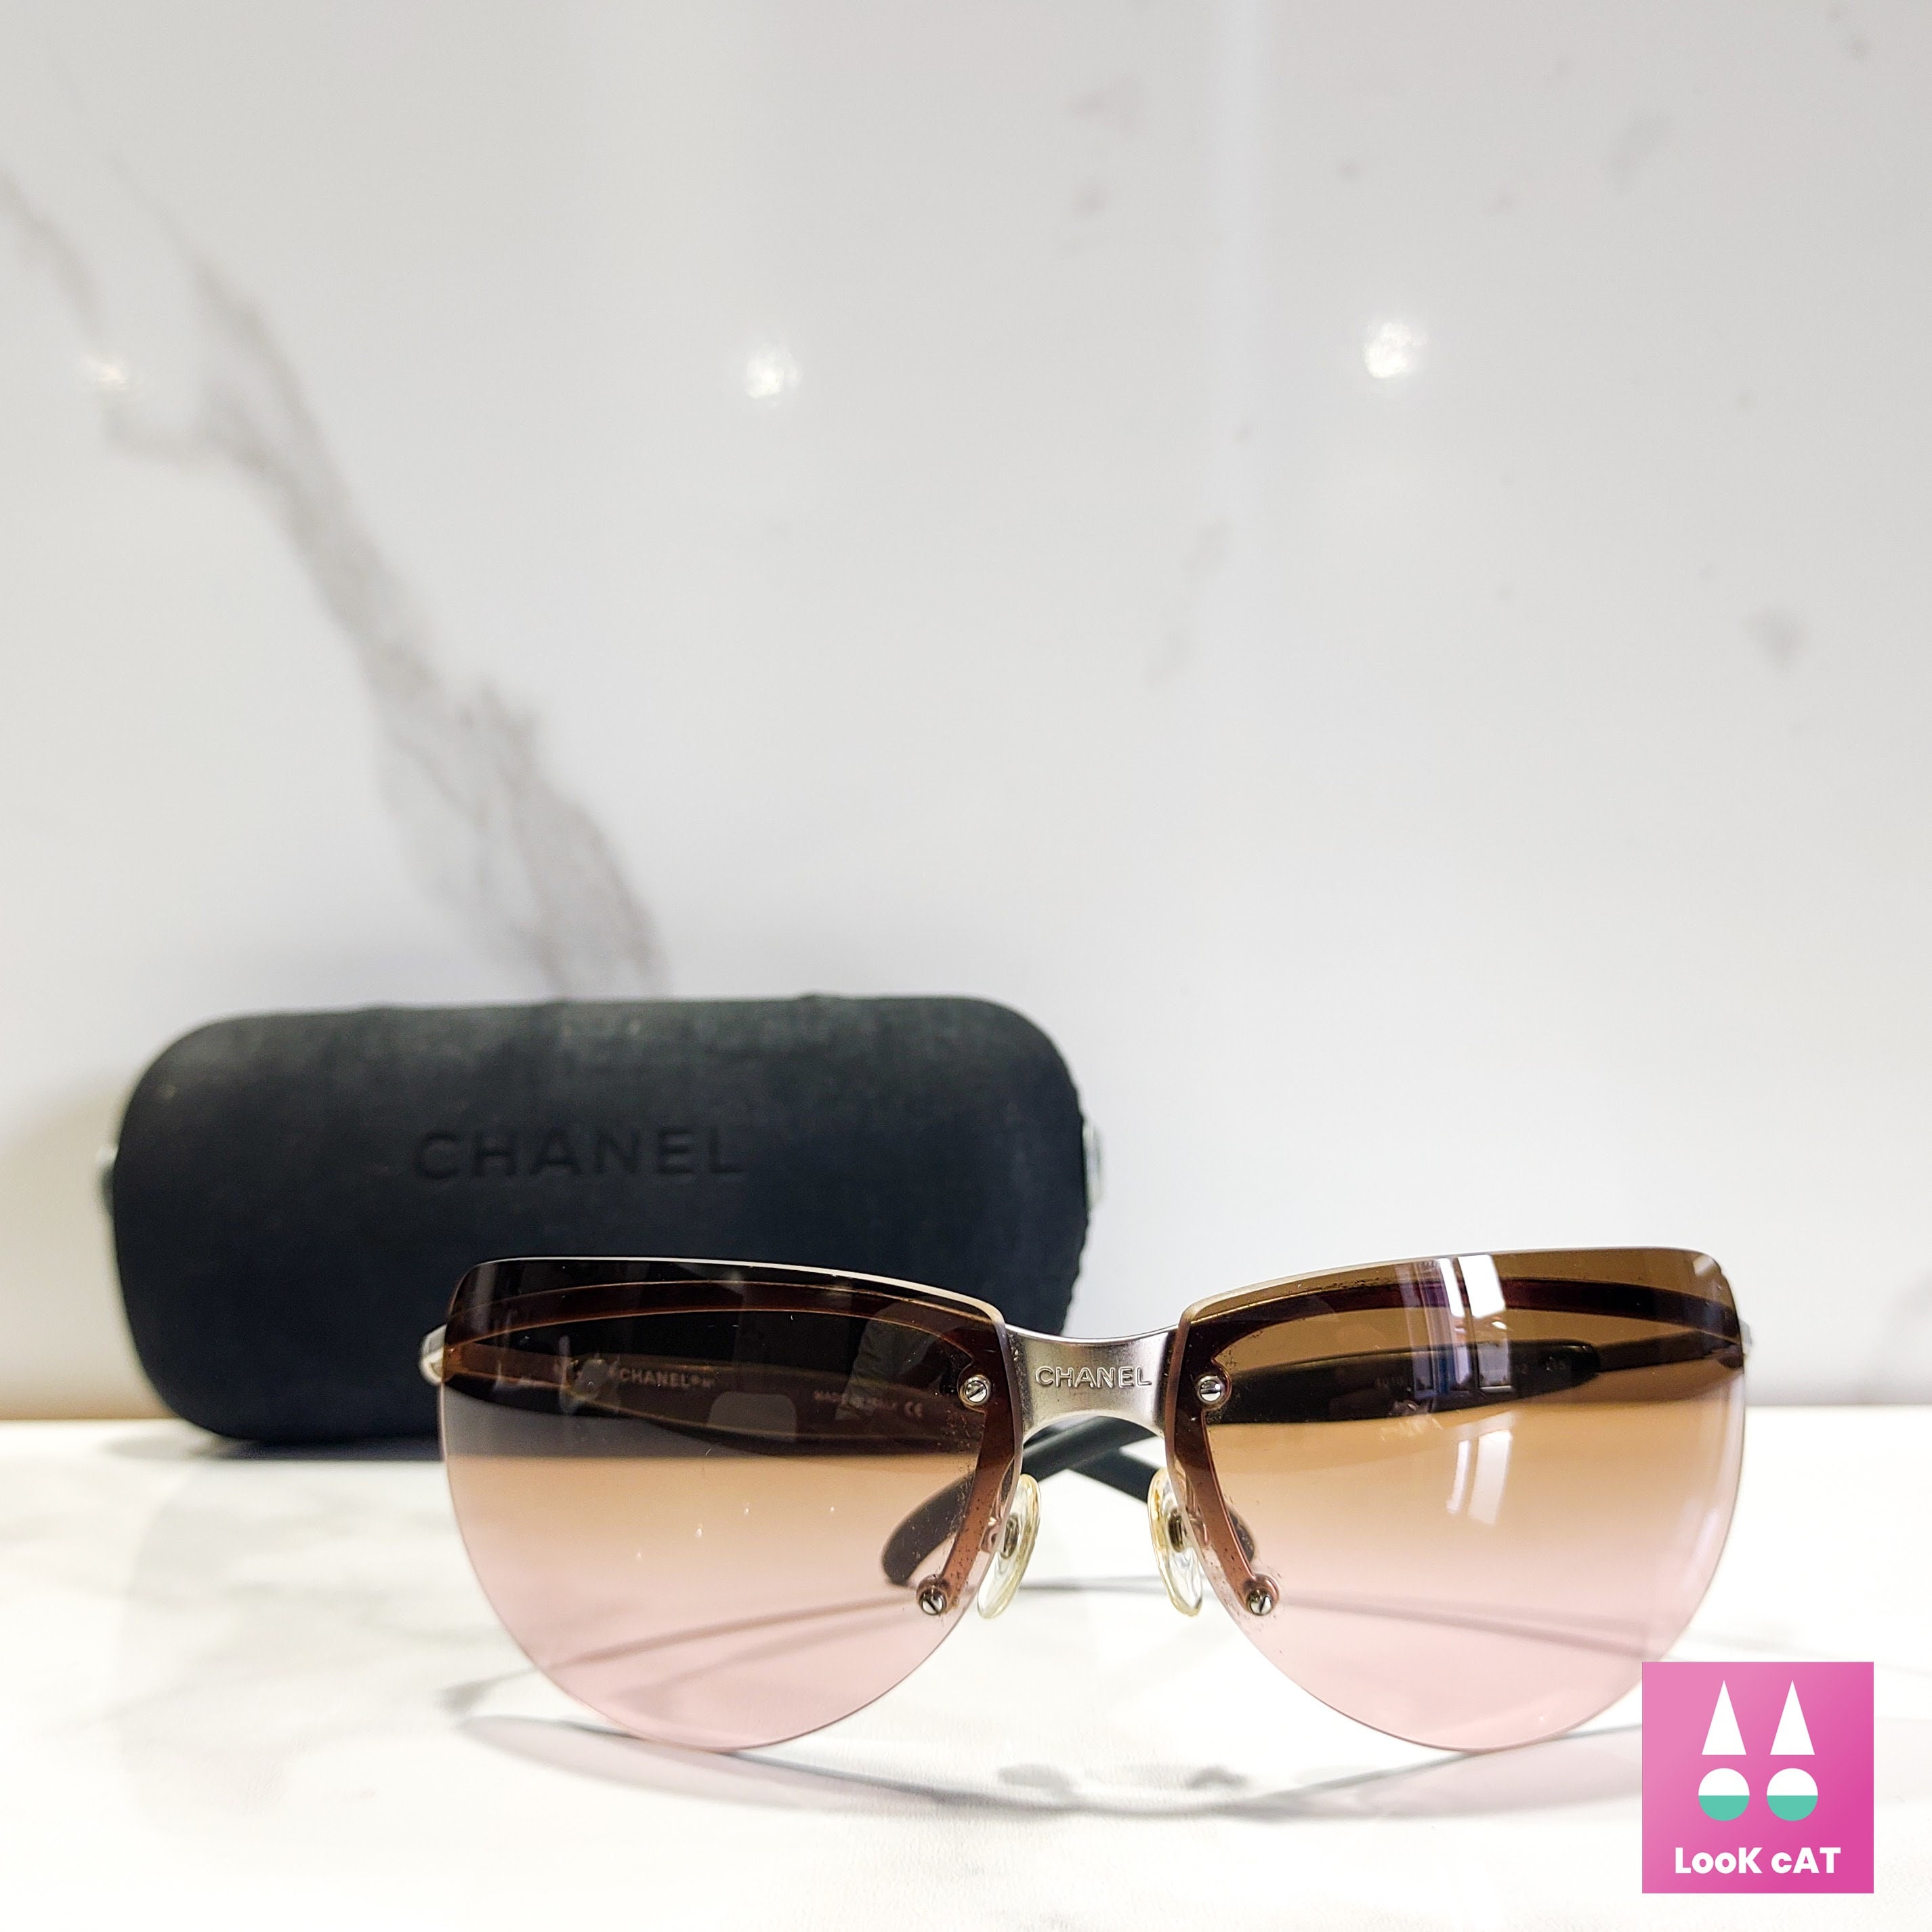 Chanel Modello 6026 Sunglasses Lunette Brille Y2k 90s Shades 